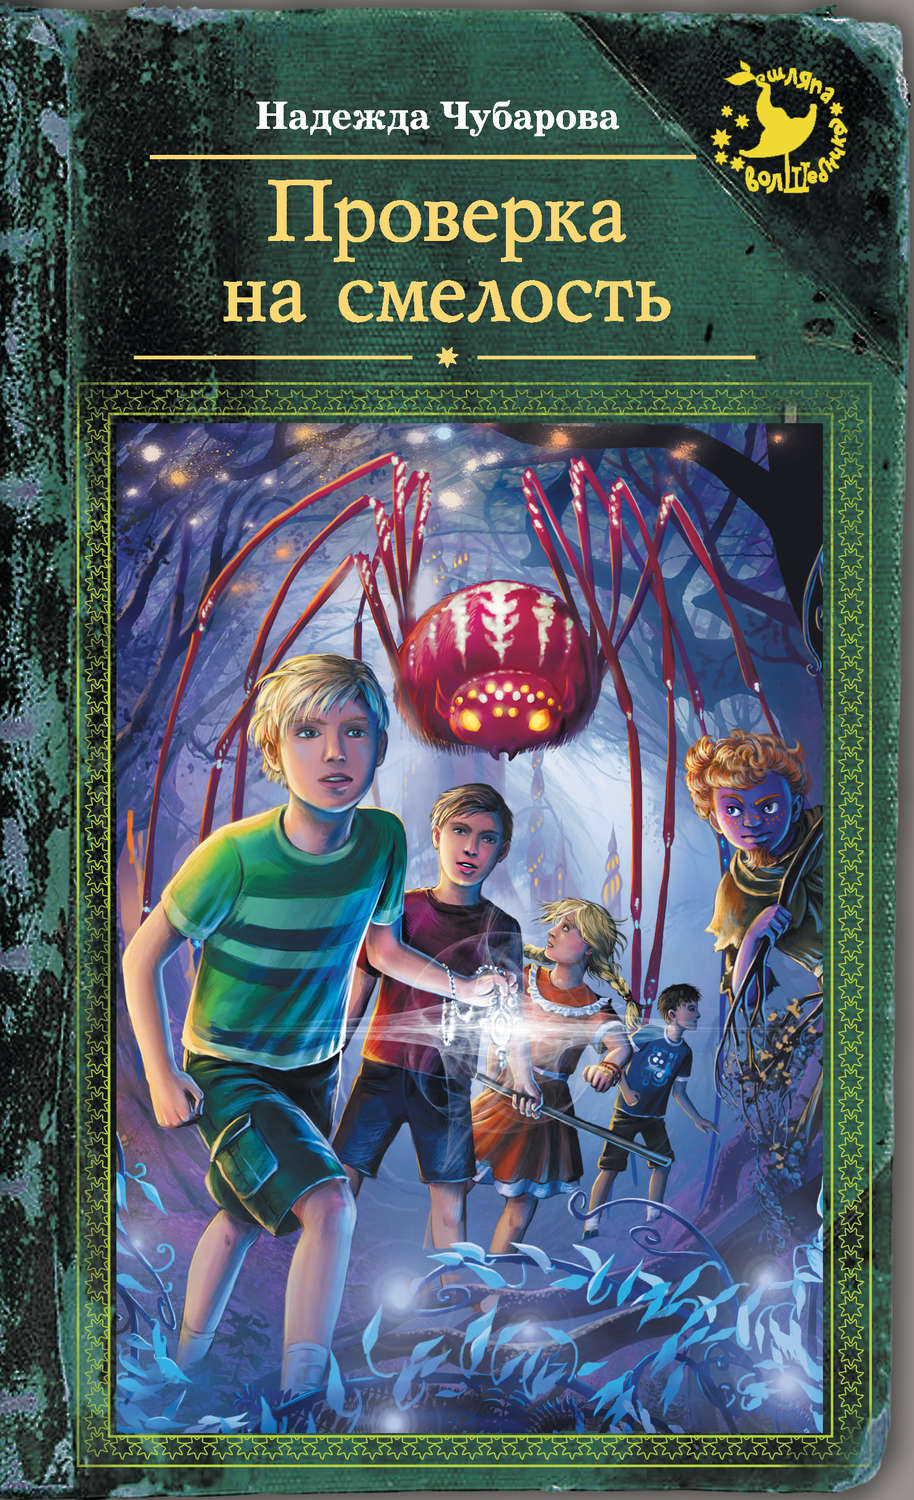 Книги 12 приключения. Книги для детей 12 лет фантастика. Фантастика для детей книги. Самые интересные книги для детей.